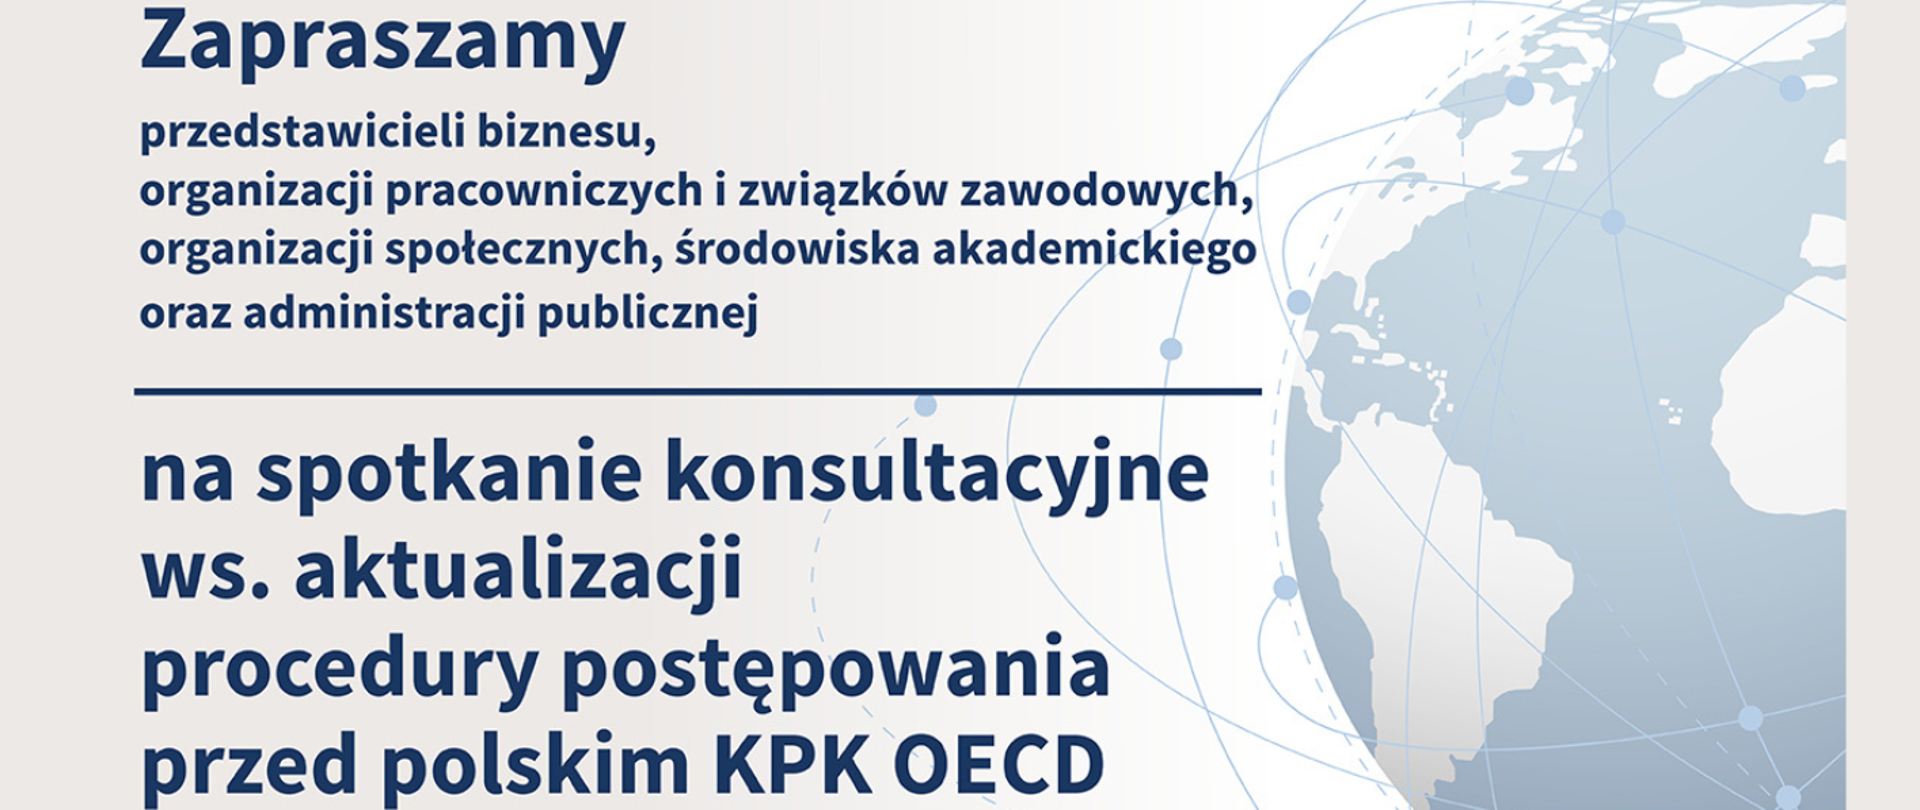 Spotkanie konsultacyjne ws. aktualizacji procedury postępowania przed KPK OECD